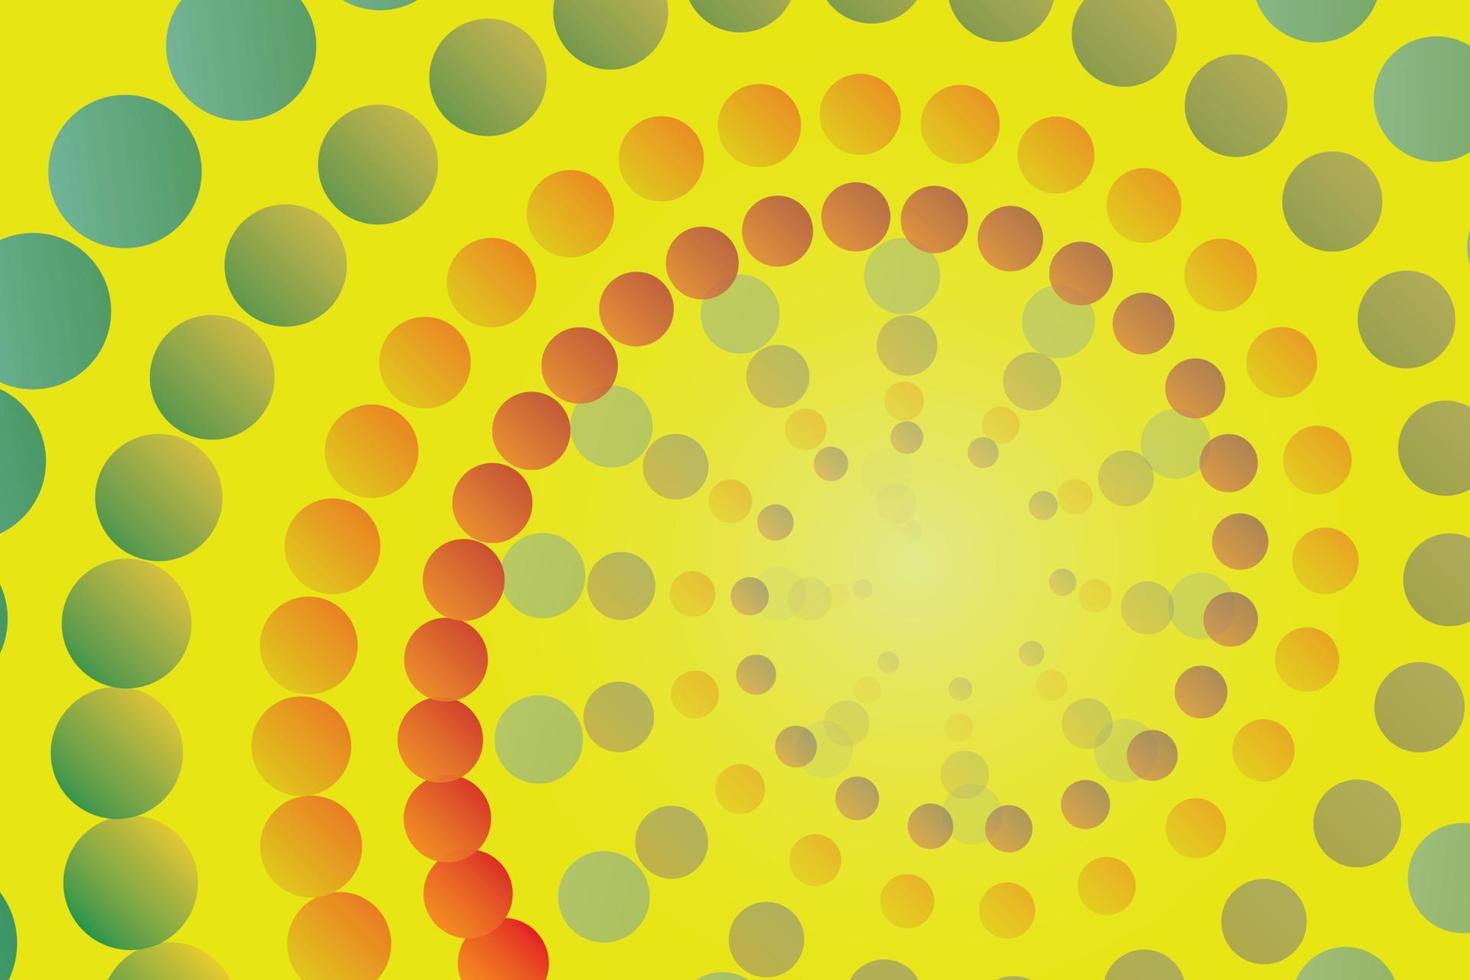 abstrakt bakgrundscirkel som är liten, stor och har en mängd olika färger. spiral från mitten av bilden med en gul bakgrund. vektor